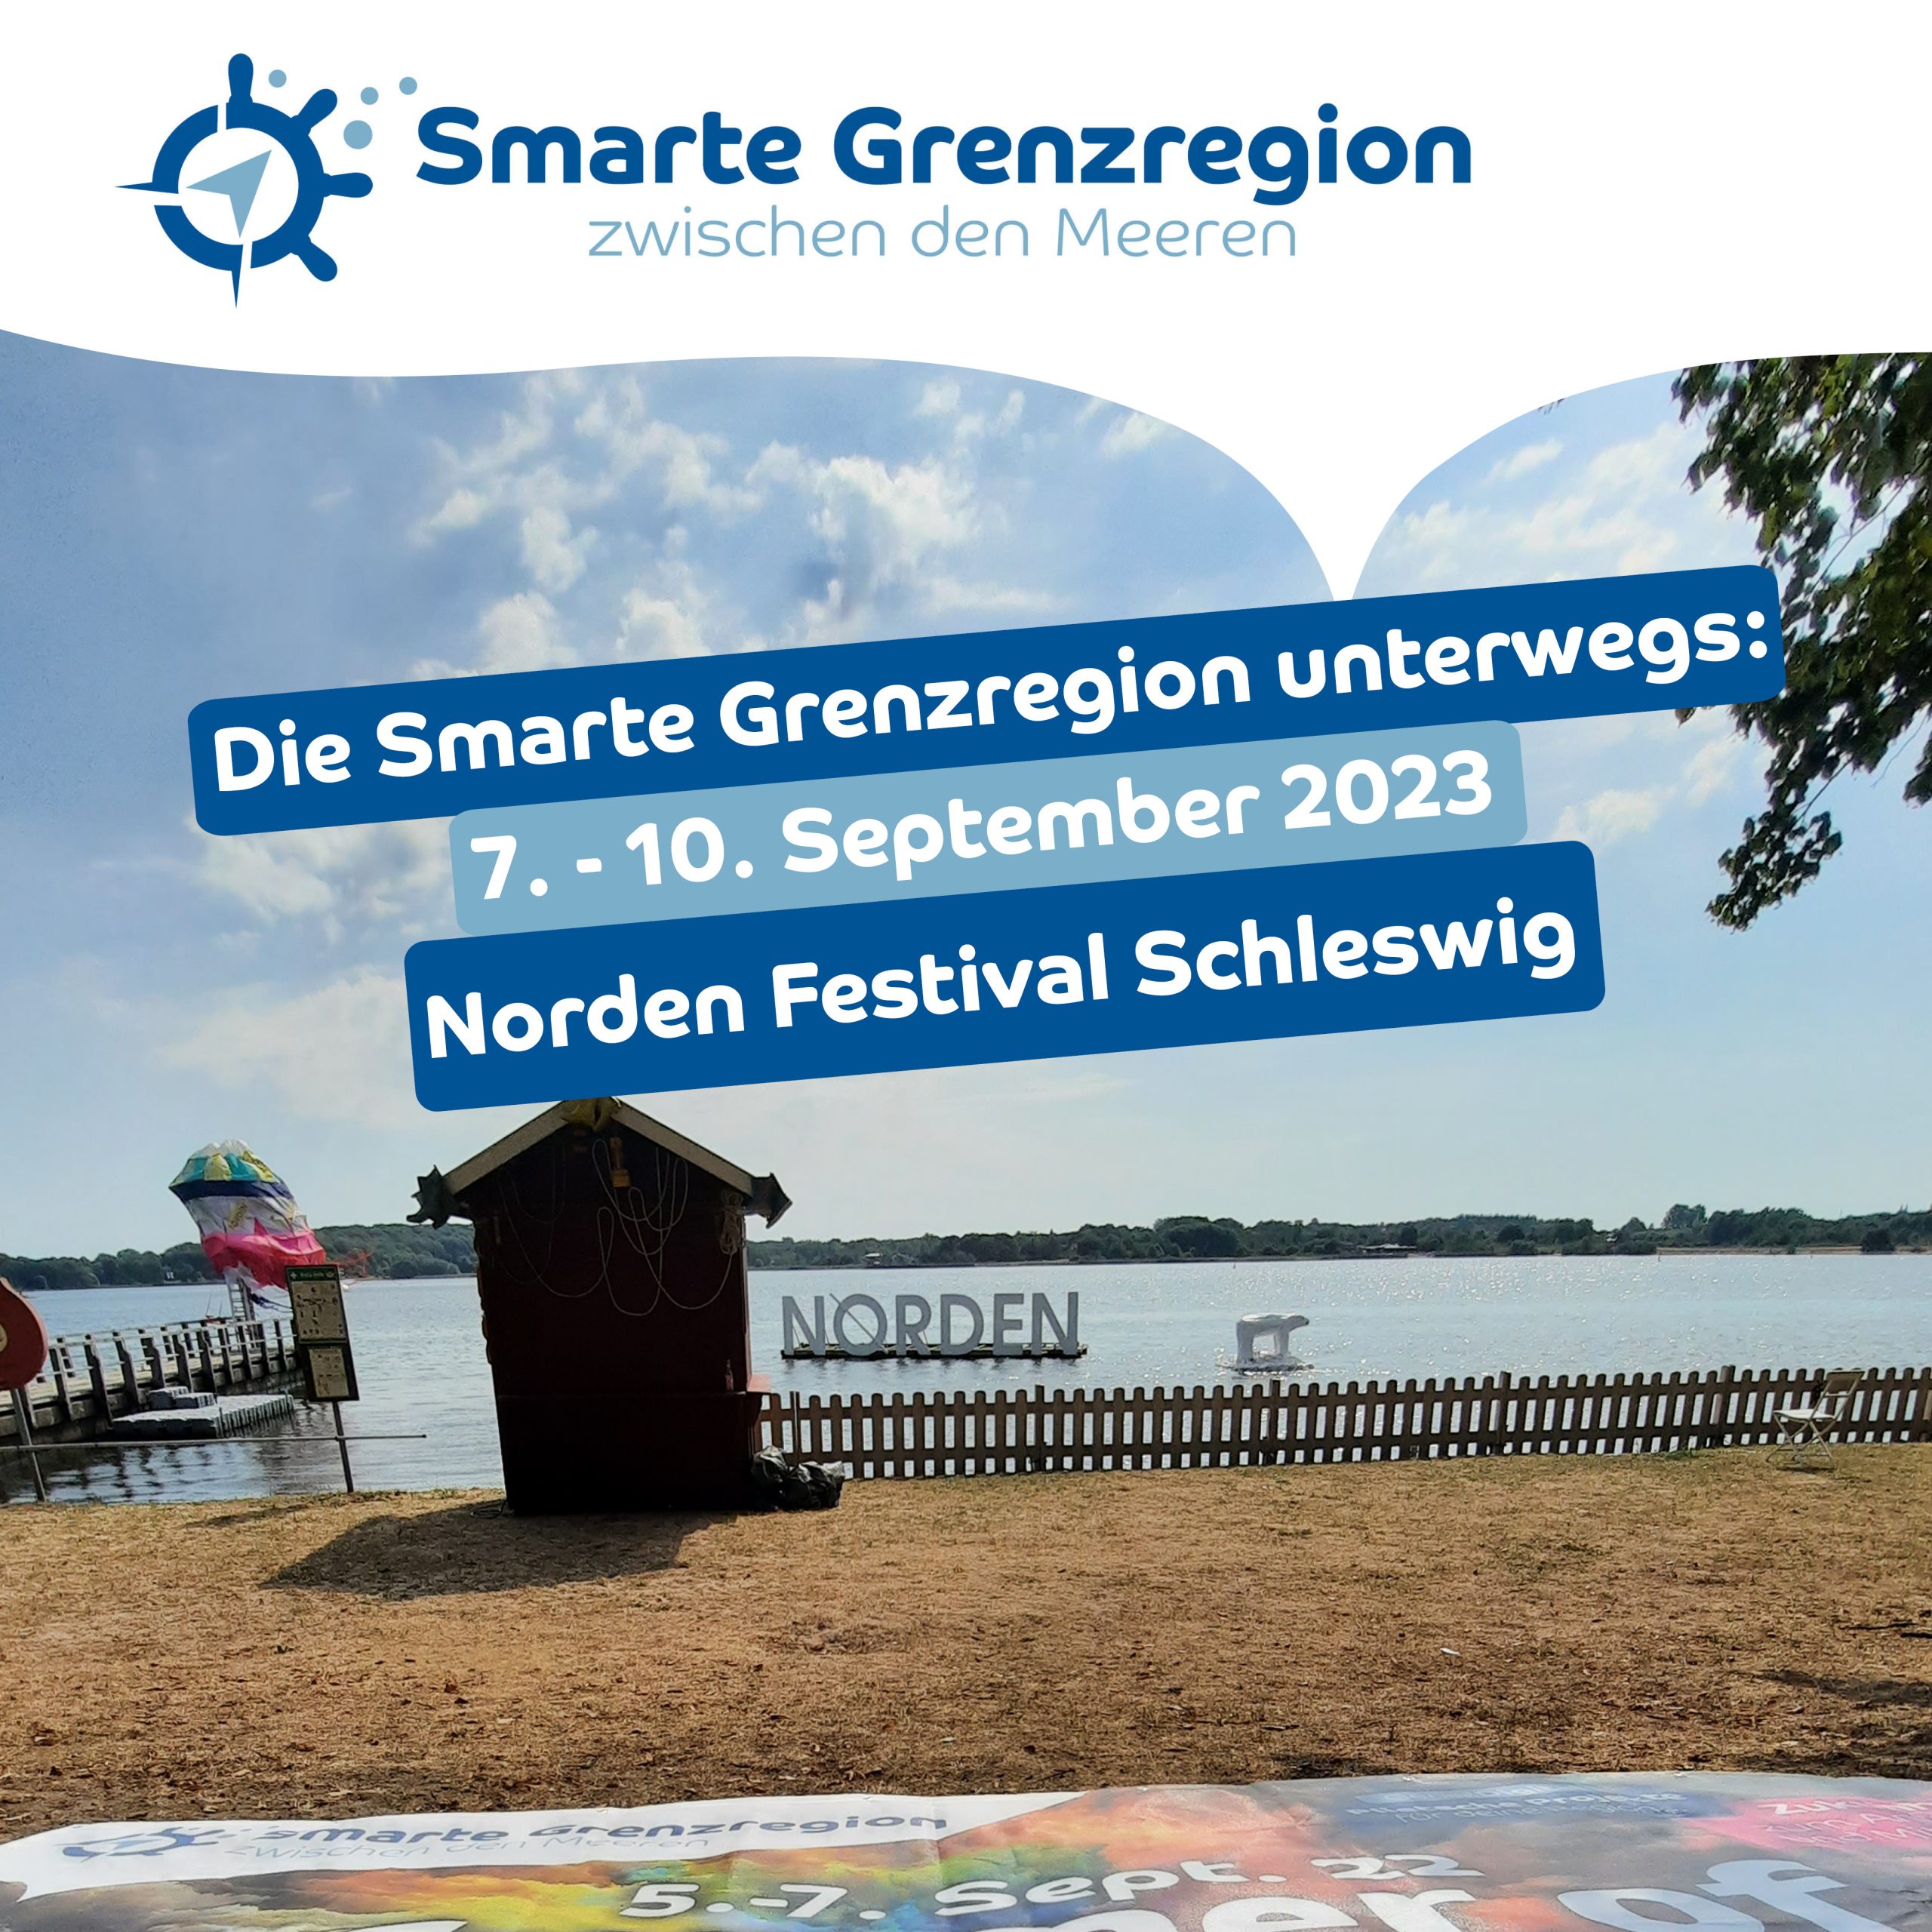 Smarte Grenzregion zwischen den Meeren auf dem Norden Festival in Schleswig.